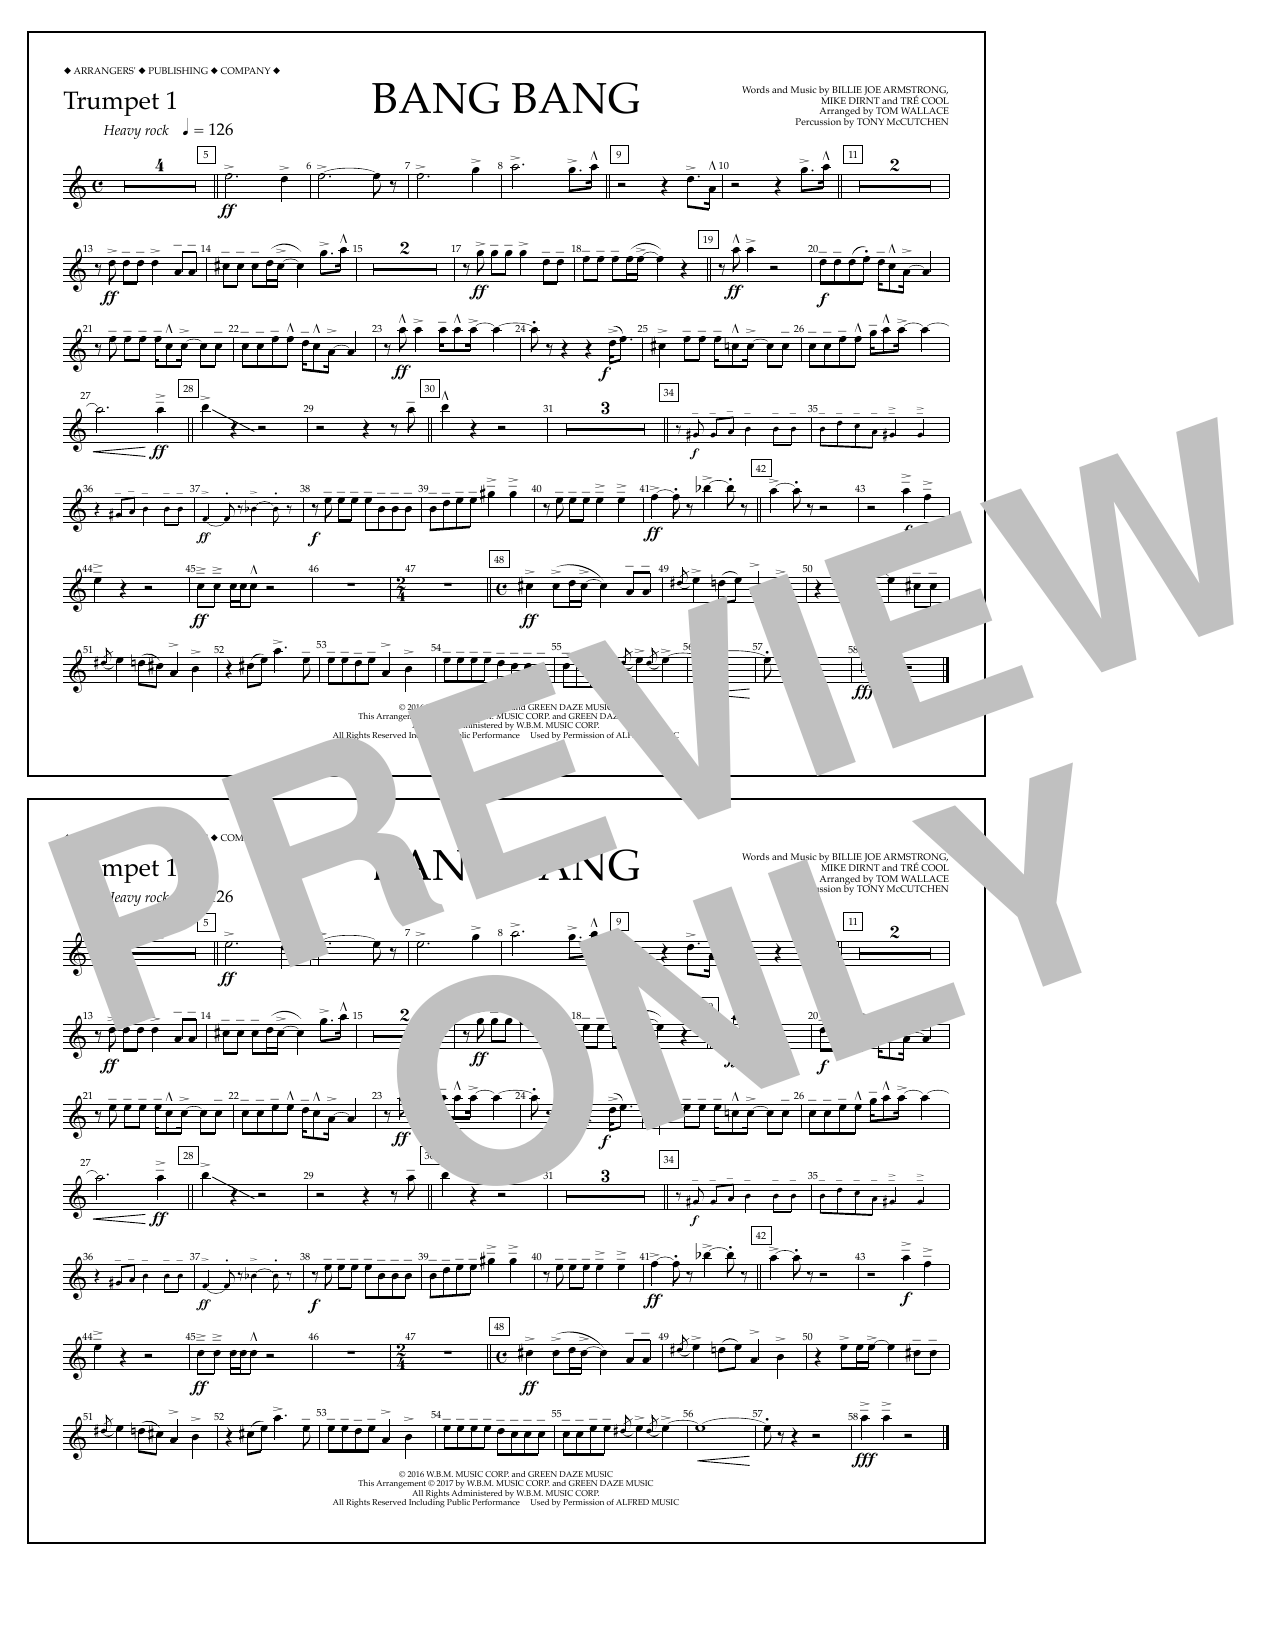 Tom Wallace Bang Bang - Trumpet 1 Sheet Music Notes & Chords for Marching Band - Download or Print PDF